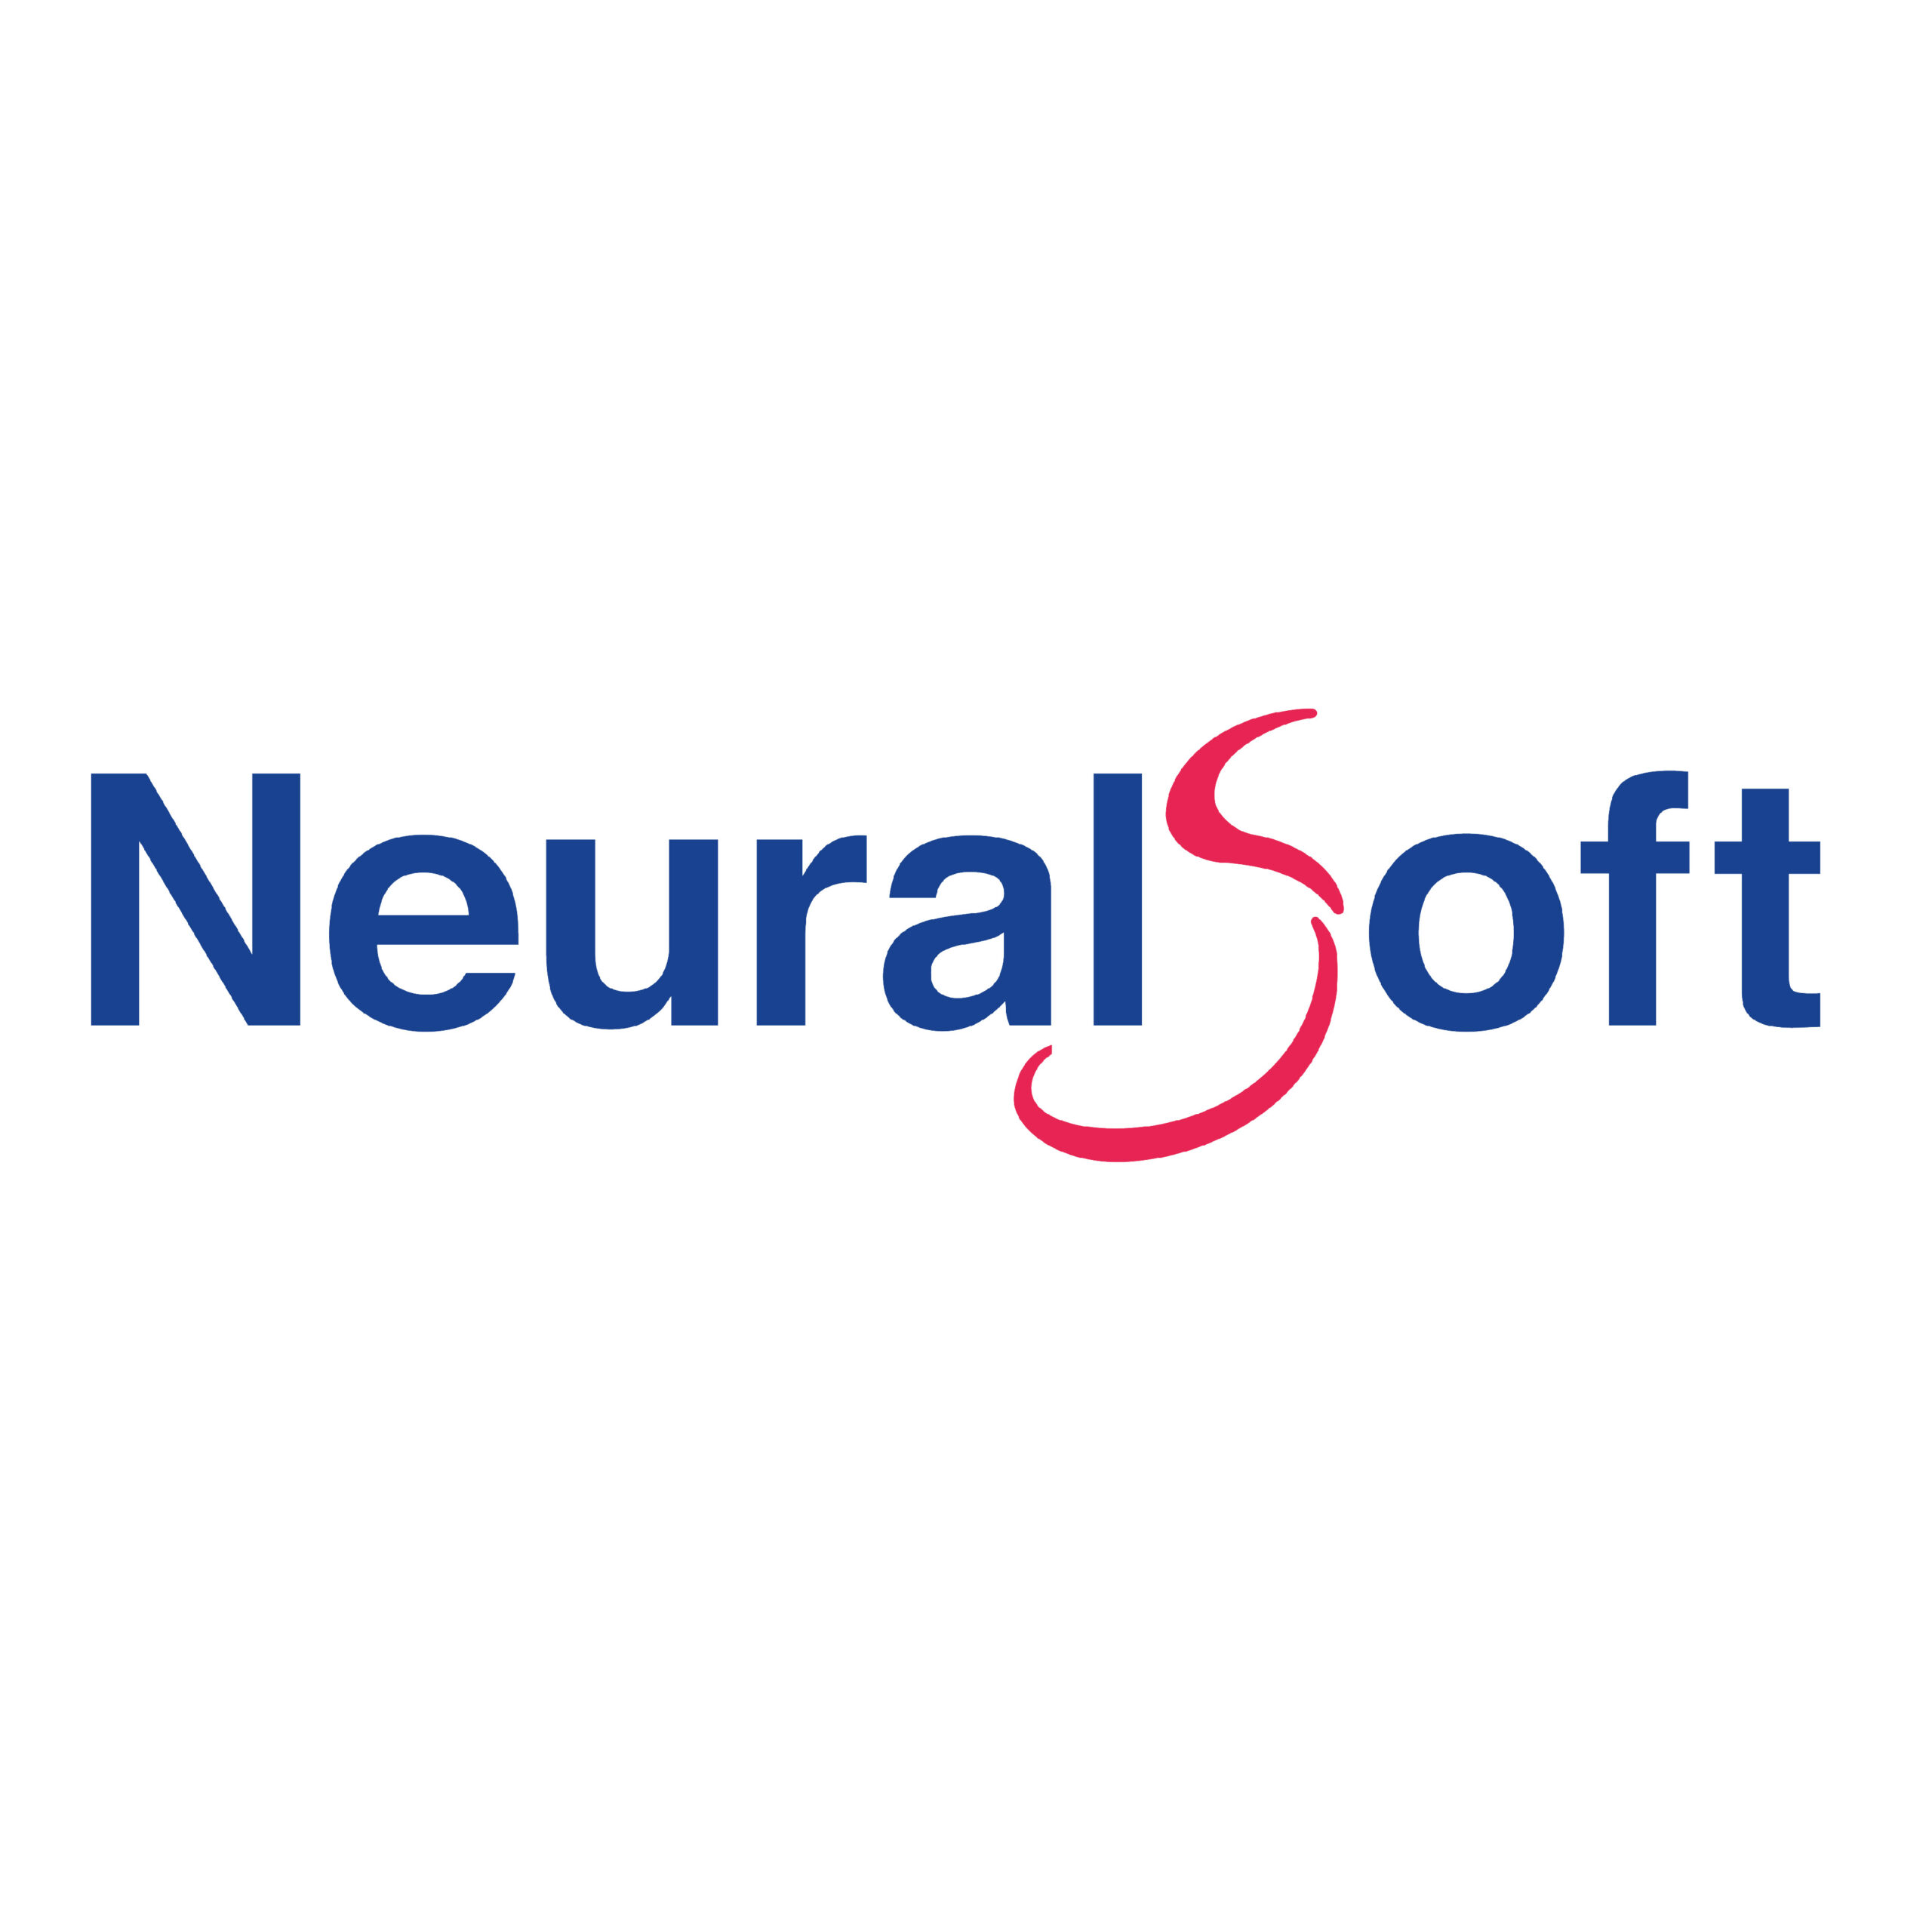 neuralsoft logo-02